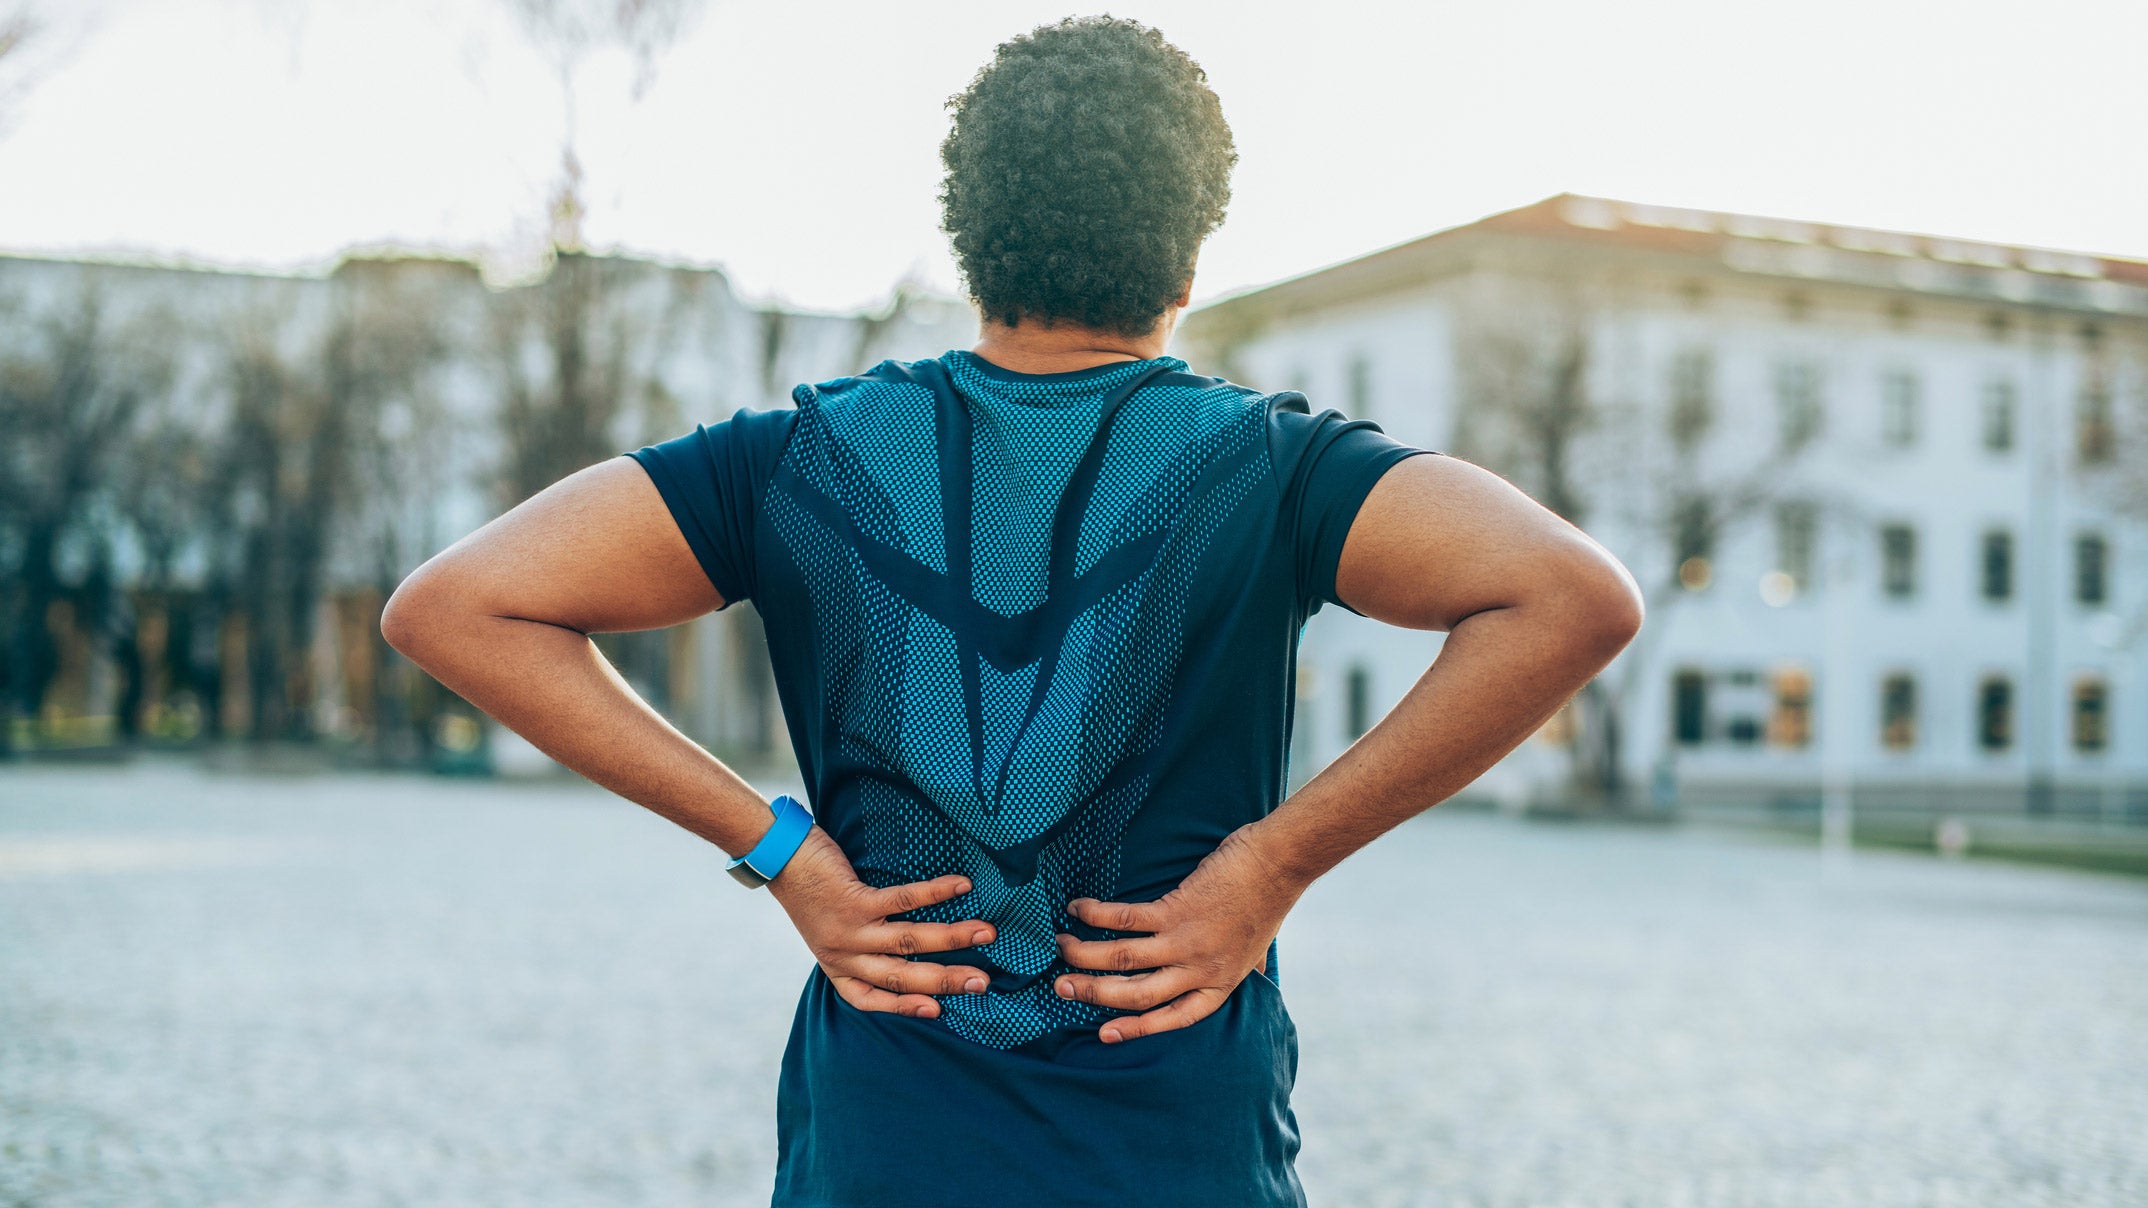 A triathlete experiences low back pain